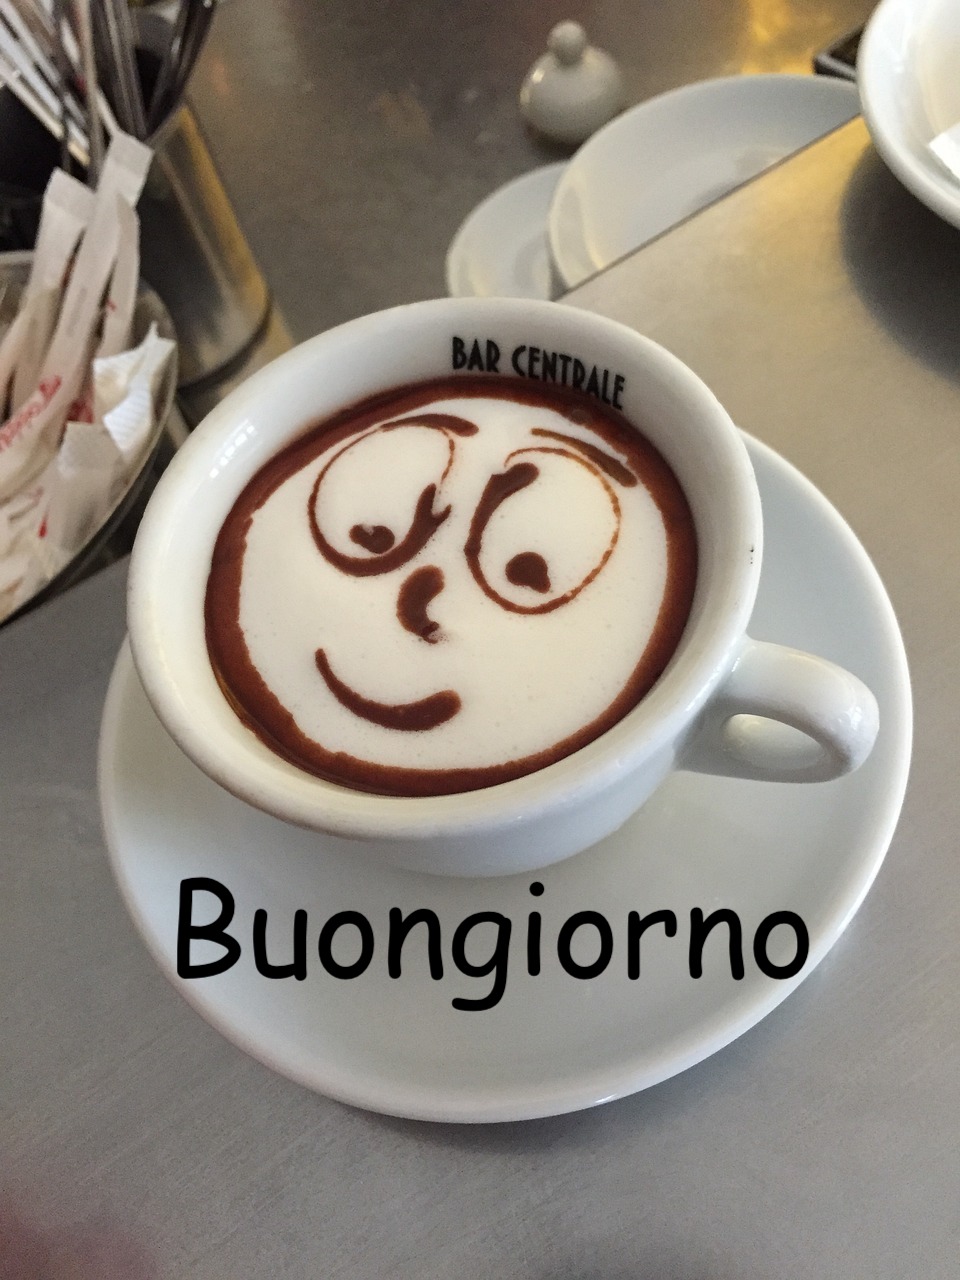 un cappuccino del bar centrale con un viso sorridente disegnato col cacao